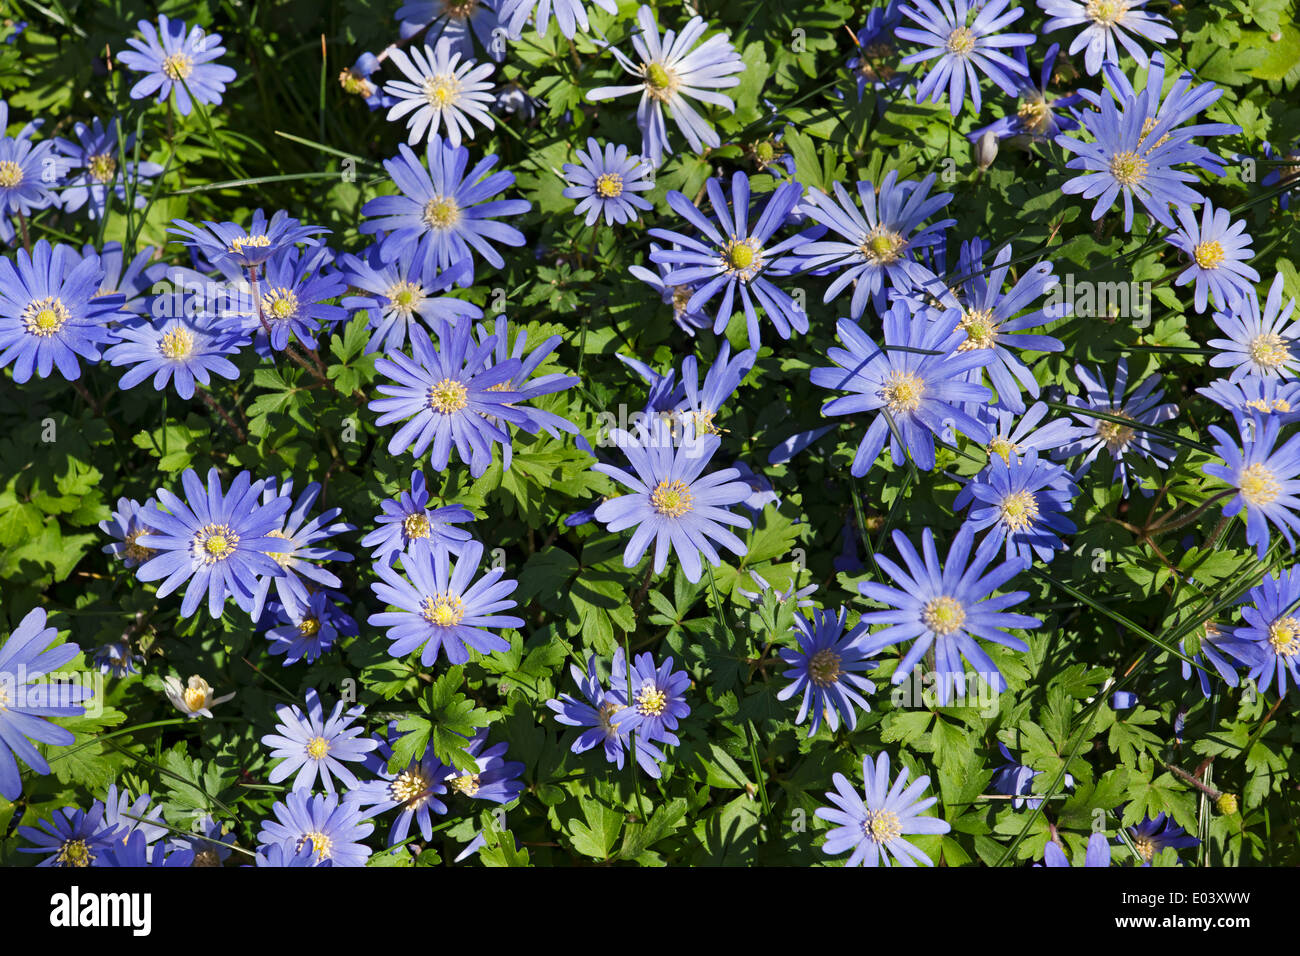 Gros plan de fleurs d'anémone bleue fleurs d'anémones fleurs fleuries dans le jardin de printemps Angleterre Royaume-Uni Grande-Bretagne Banque D'Images